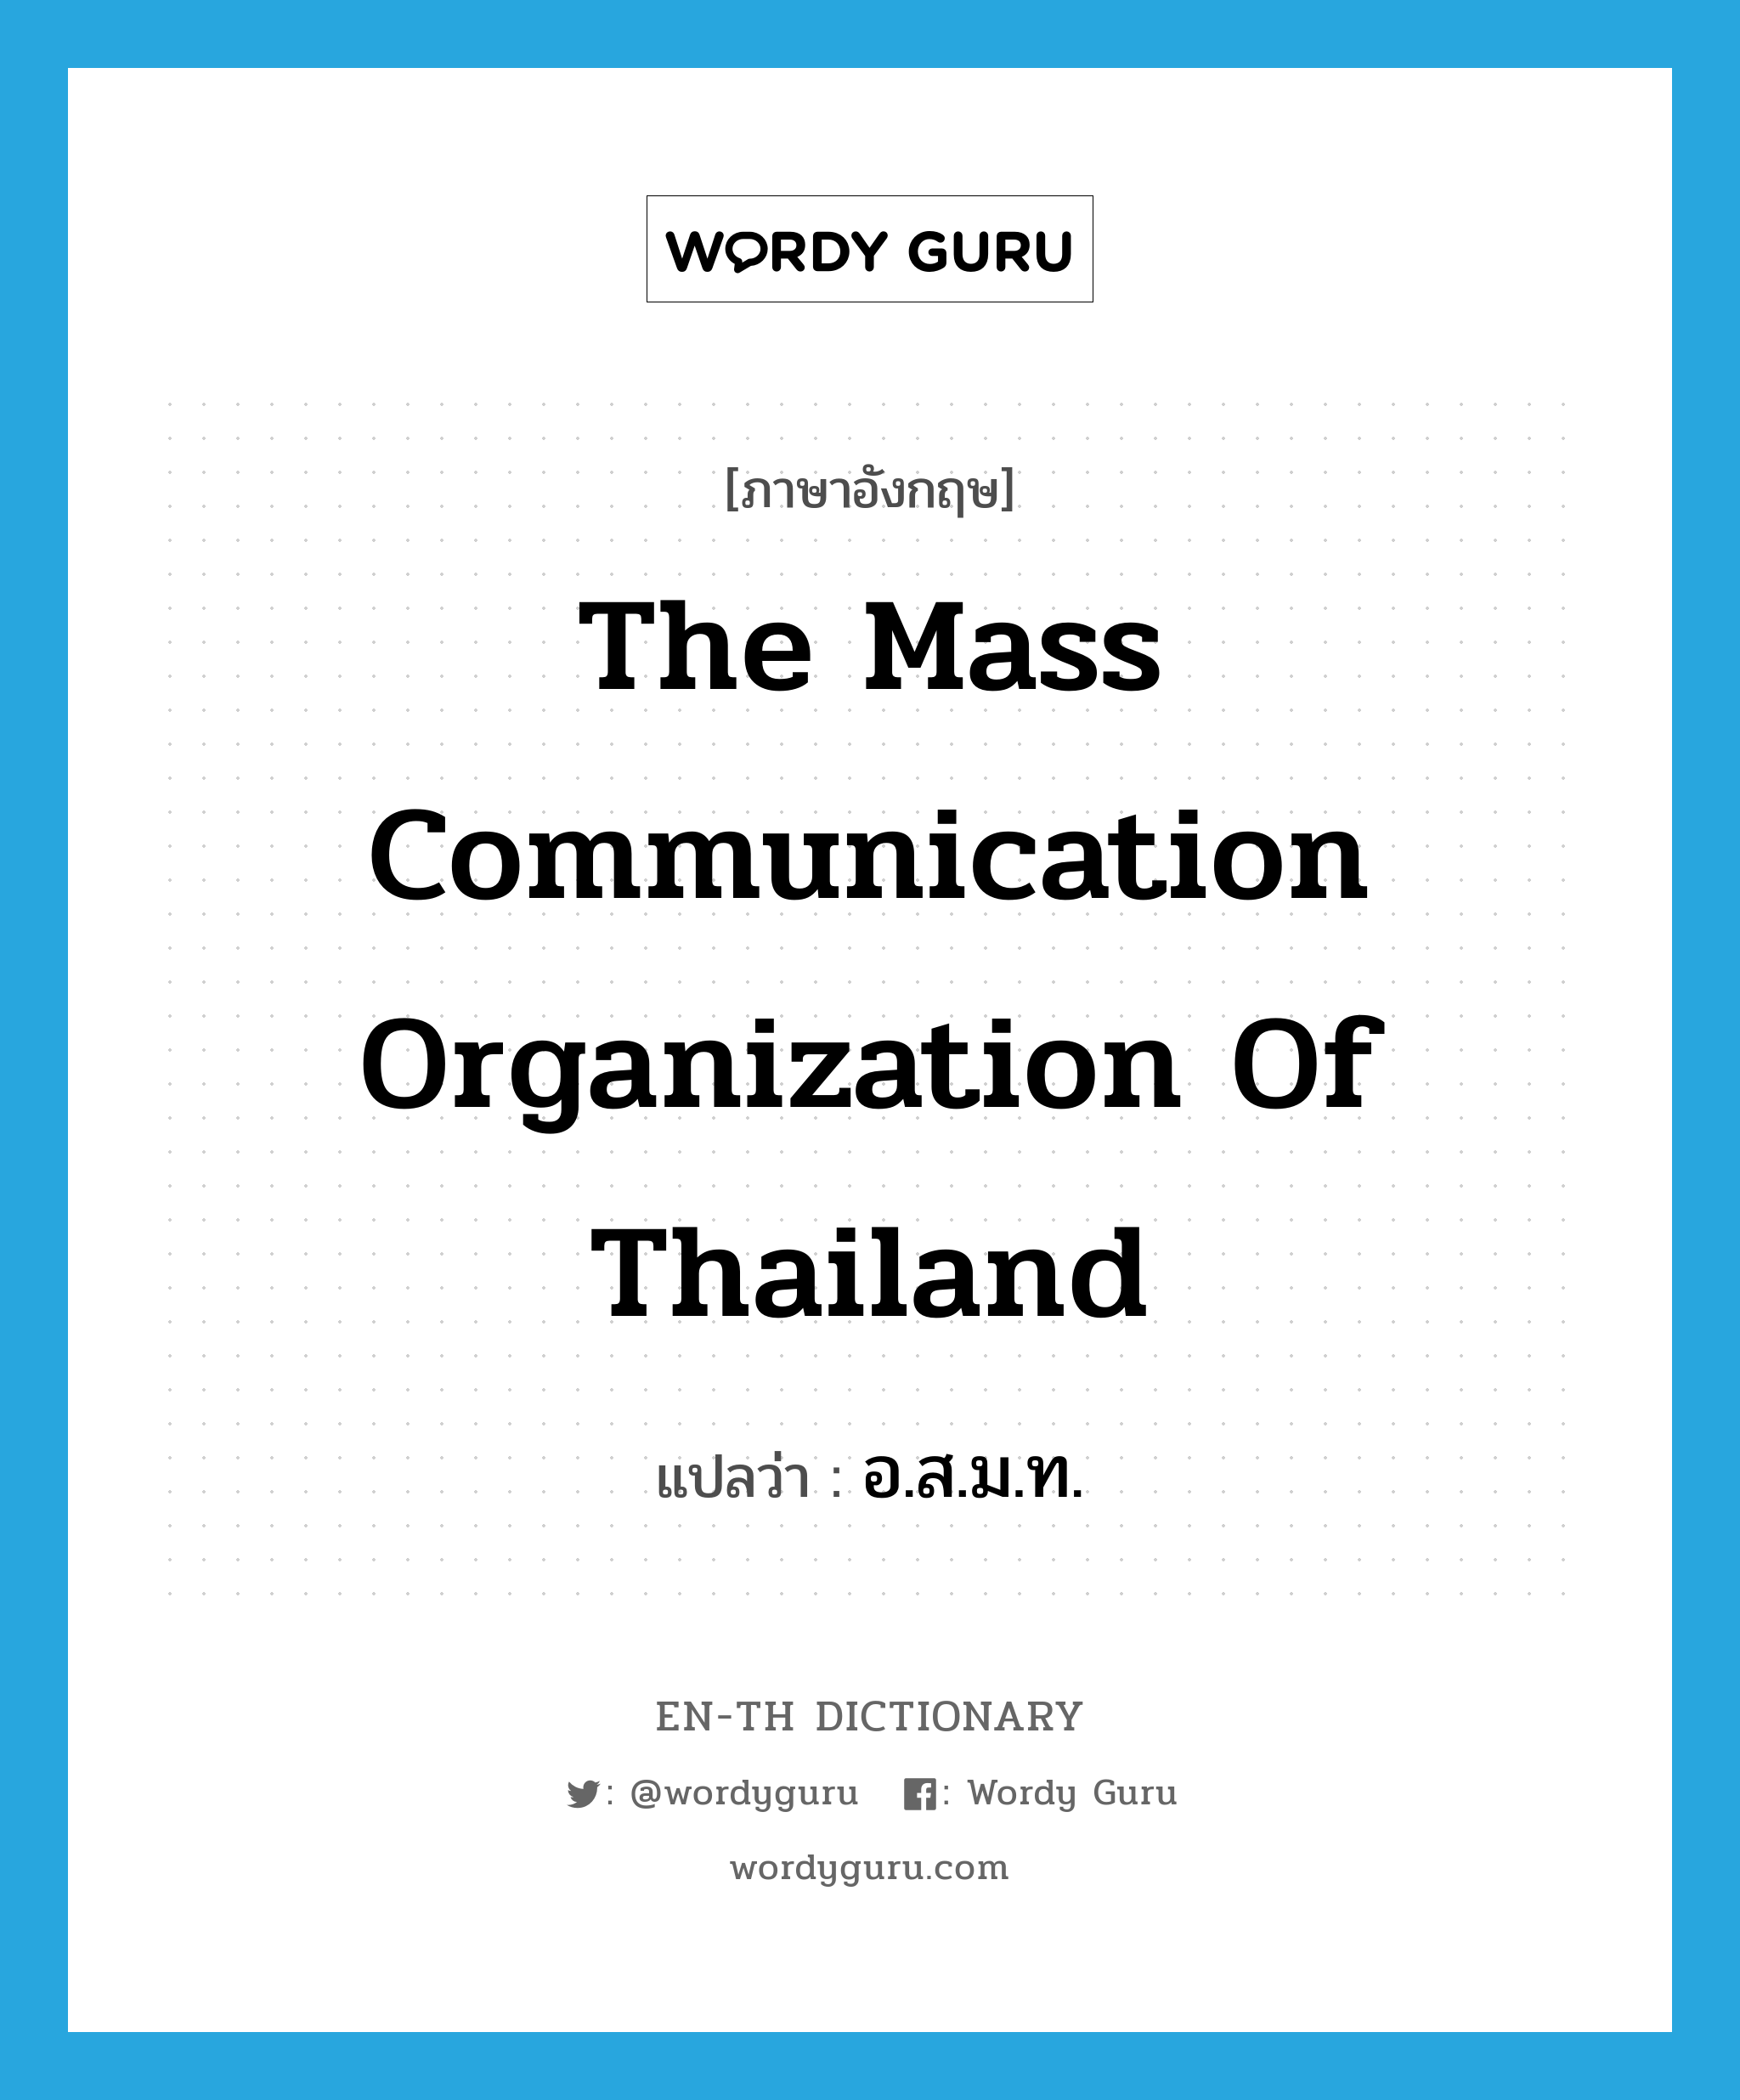 อ.ส.ม.ท. ภาษาอังกฤษ?, คำศัพท์ภาษาอังกฤษ อ.ส.ม.ท. แปลว่า The Mass Communication Organization of Thailand ประเภท N หมวด N